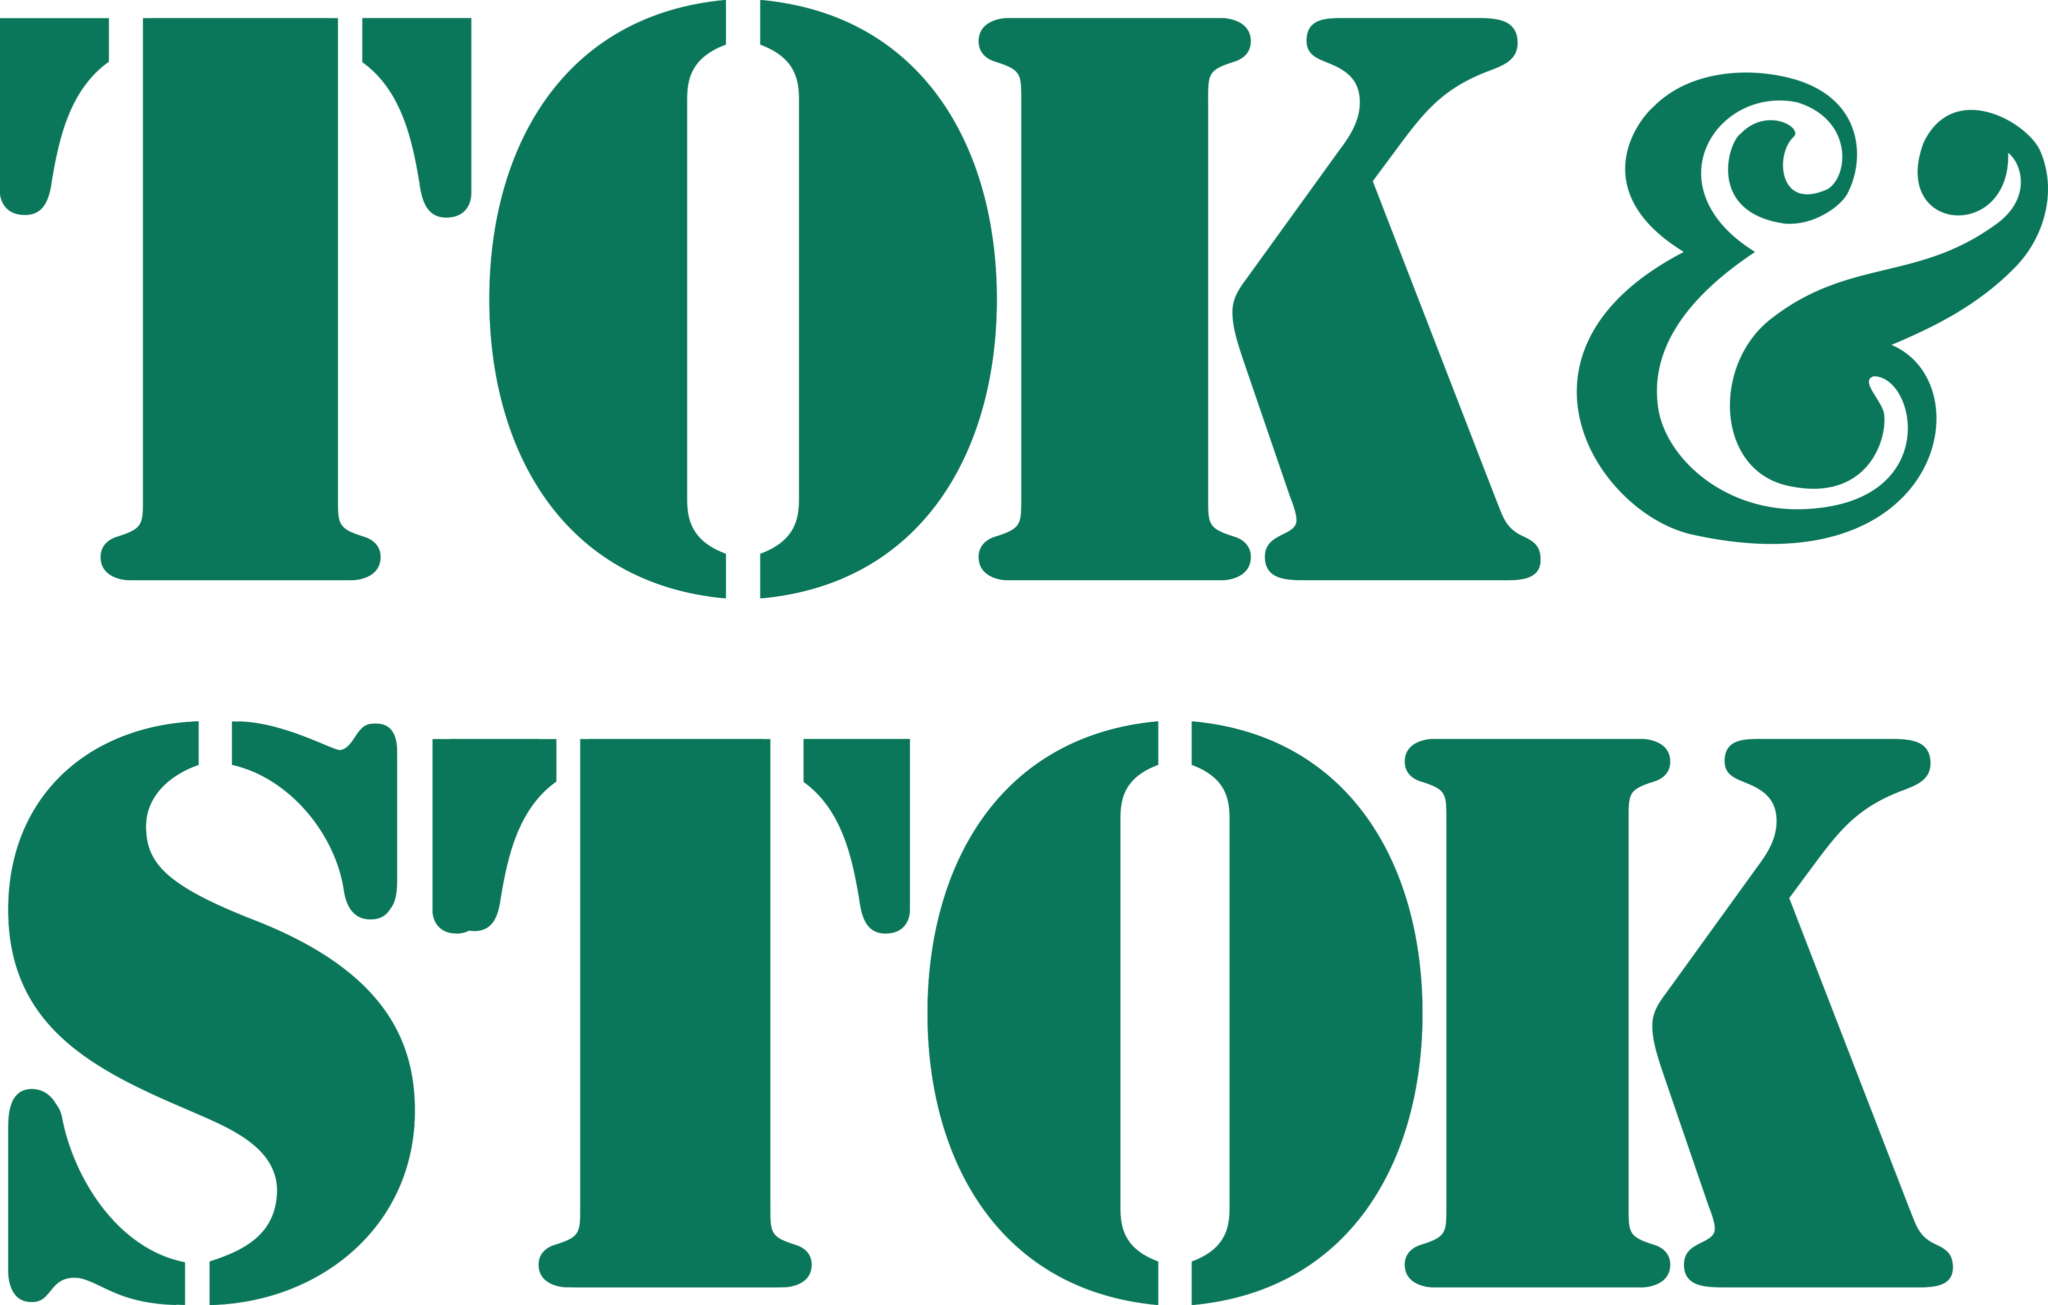 tok-stok.png